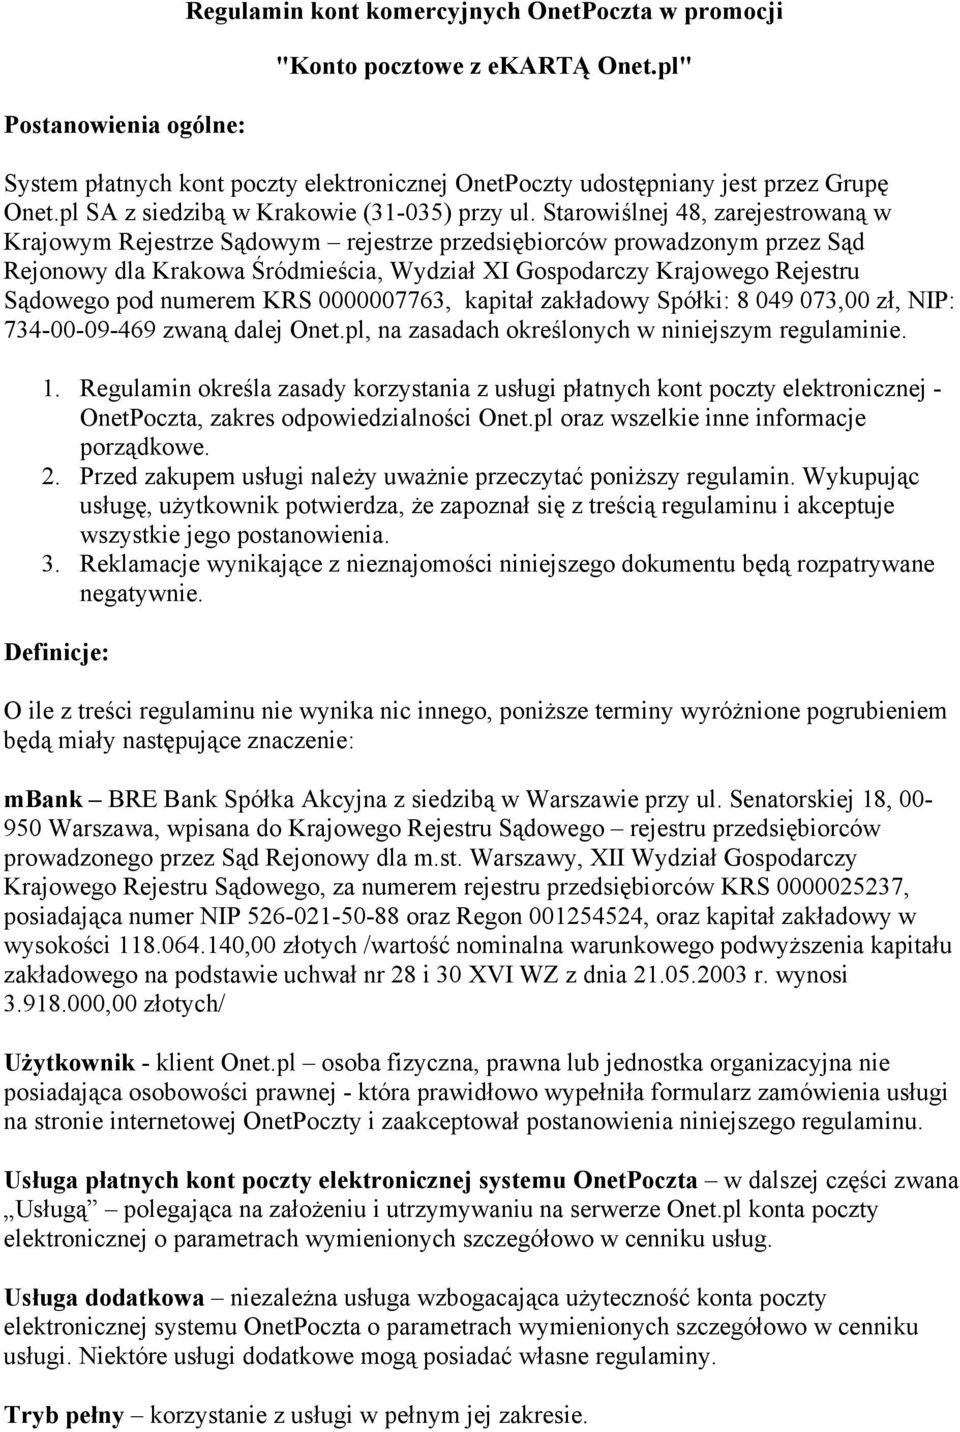 Starowiślnej 48, zarejestrowaną w Krajowym Rejestrze Sądowym rejestrze przedsiębiorców prowadzonym przez Sąd Rejonowy dla Krakowa Śródmieścia, Wydział XI Gospodarczy Krajowego Rejestru Sądowego pod